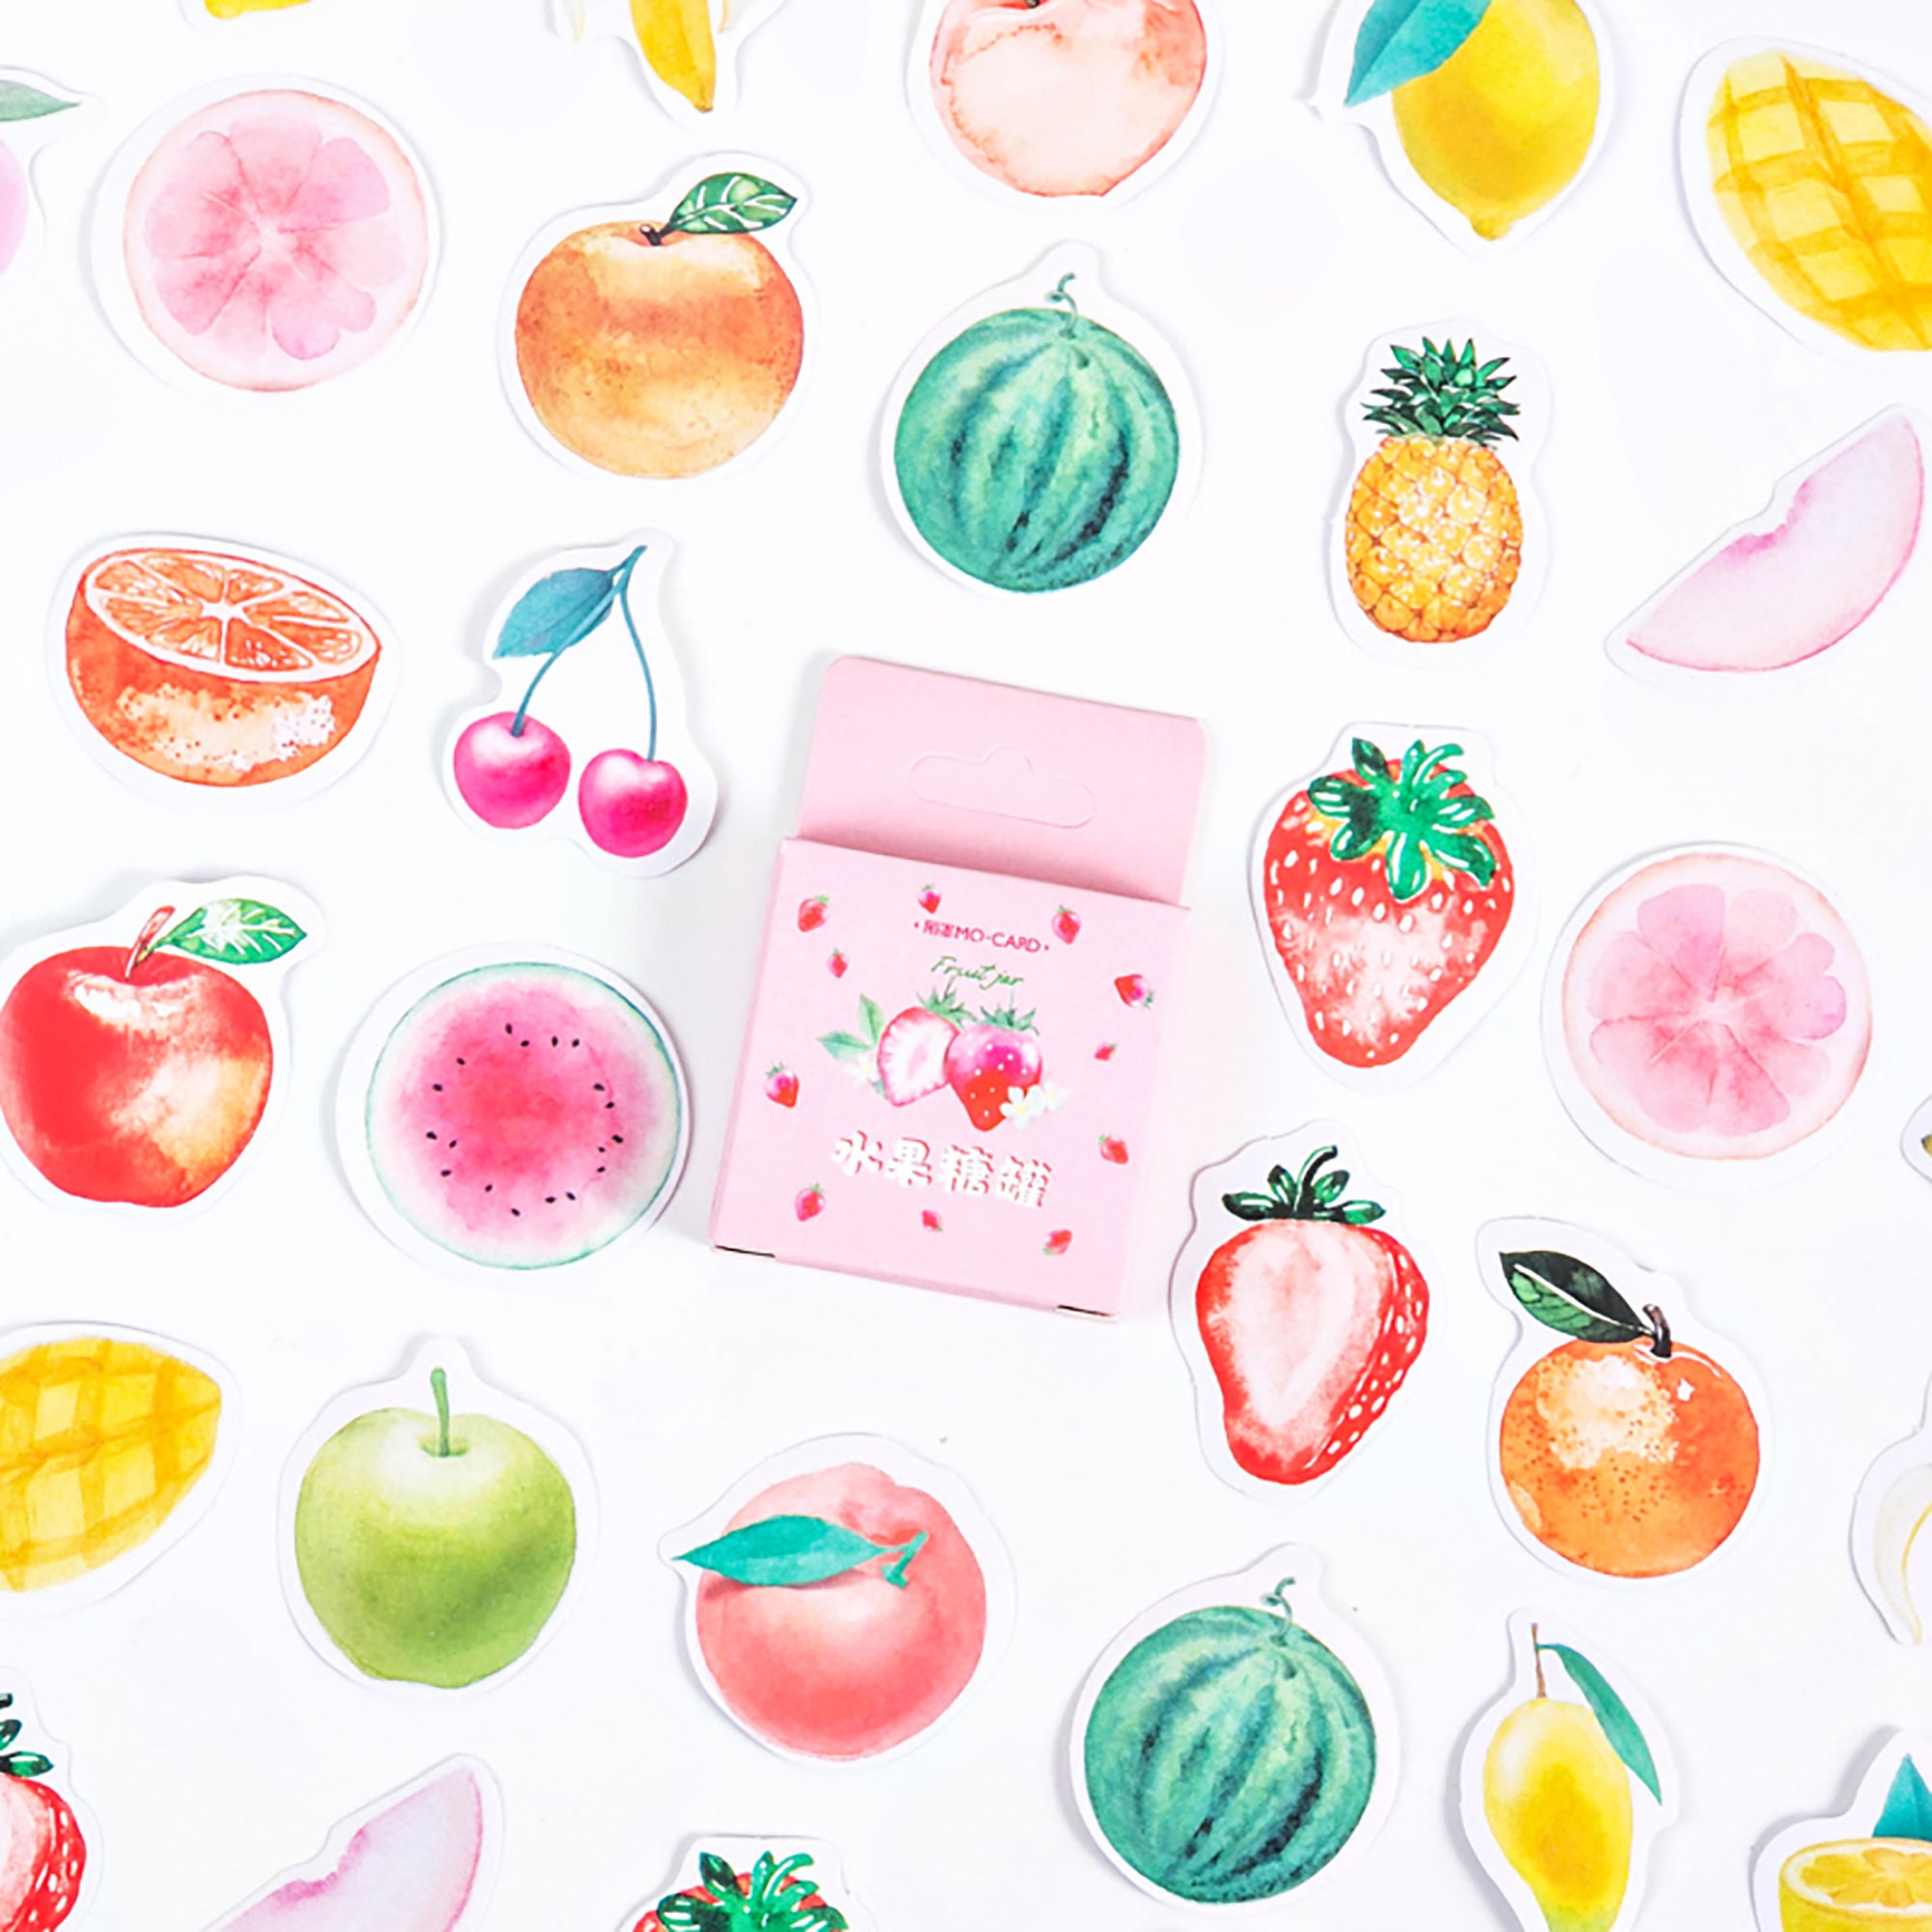 Fruit Stickers là những nhãn dán kết hợp hình ảnh hoa quả đáng yêu và dễ thương, sẽ khiến cho tin nhắn của bạn trở nên sinh động hơn bao giờ hết. Xem ngay để tải về và sử dụng ngay!